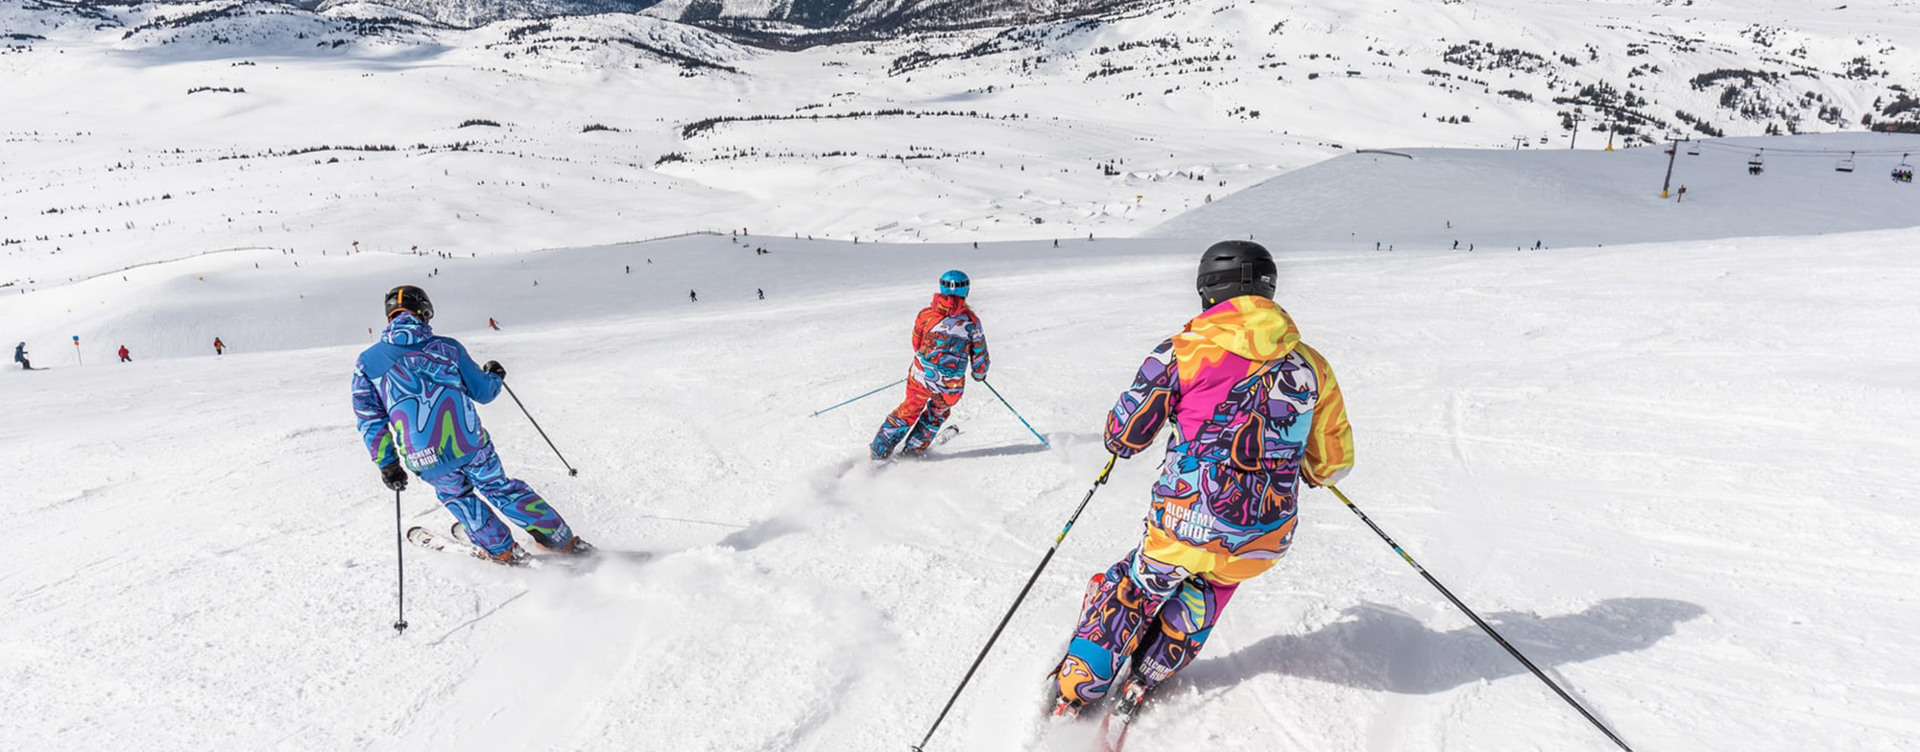 Ontdek de uitdagende skigebieden
in en rondom Vallorcine